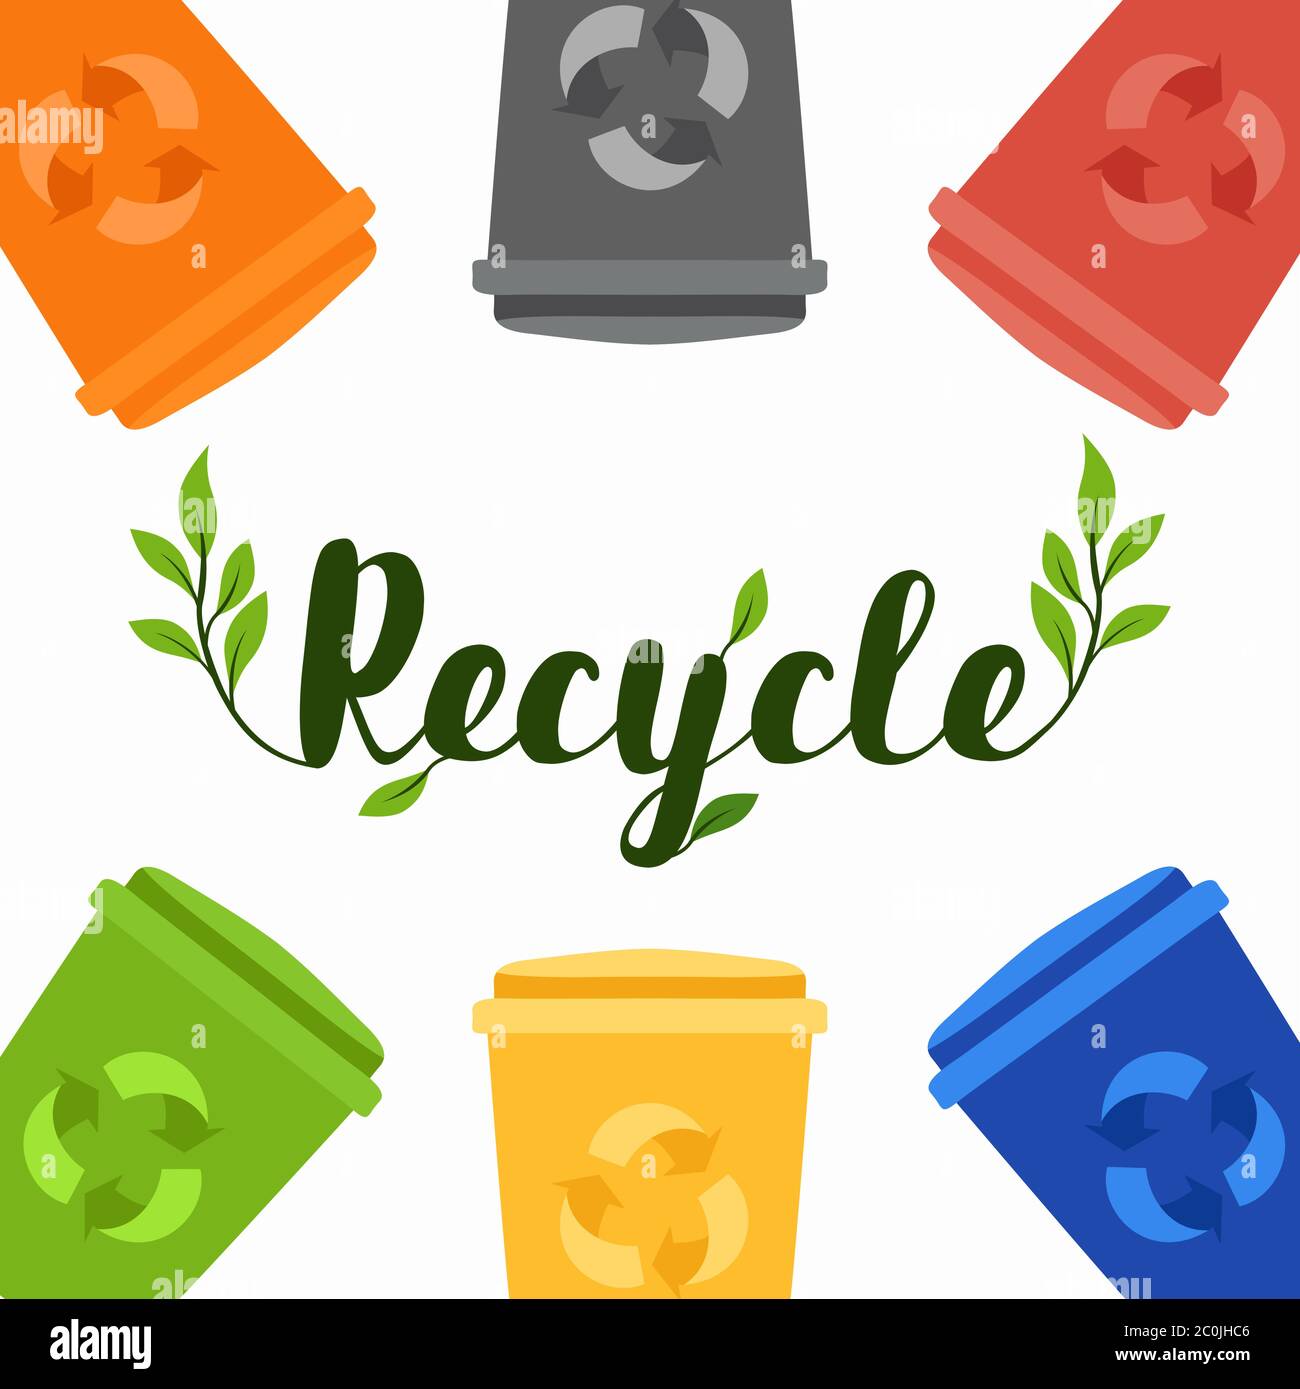 Bunte Recycling-bin-Illustration für Recycling-Aktivitäten in separaten umweltfreundlichen Abfalleimer. Natur Hilfe Kampagne oder Abfallvermeidung Konzept. Stock Vektor